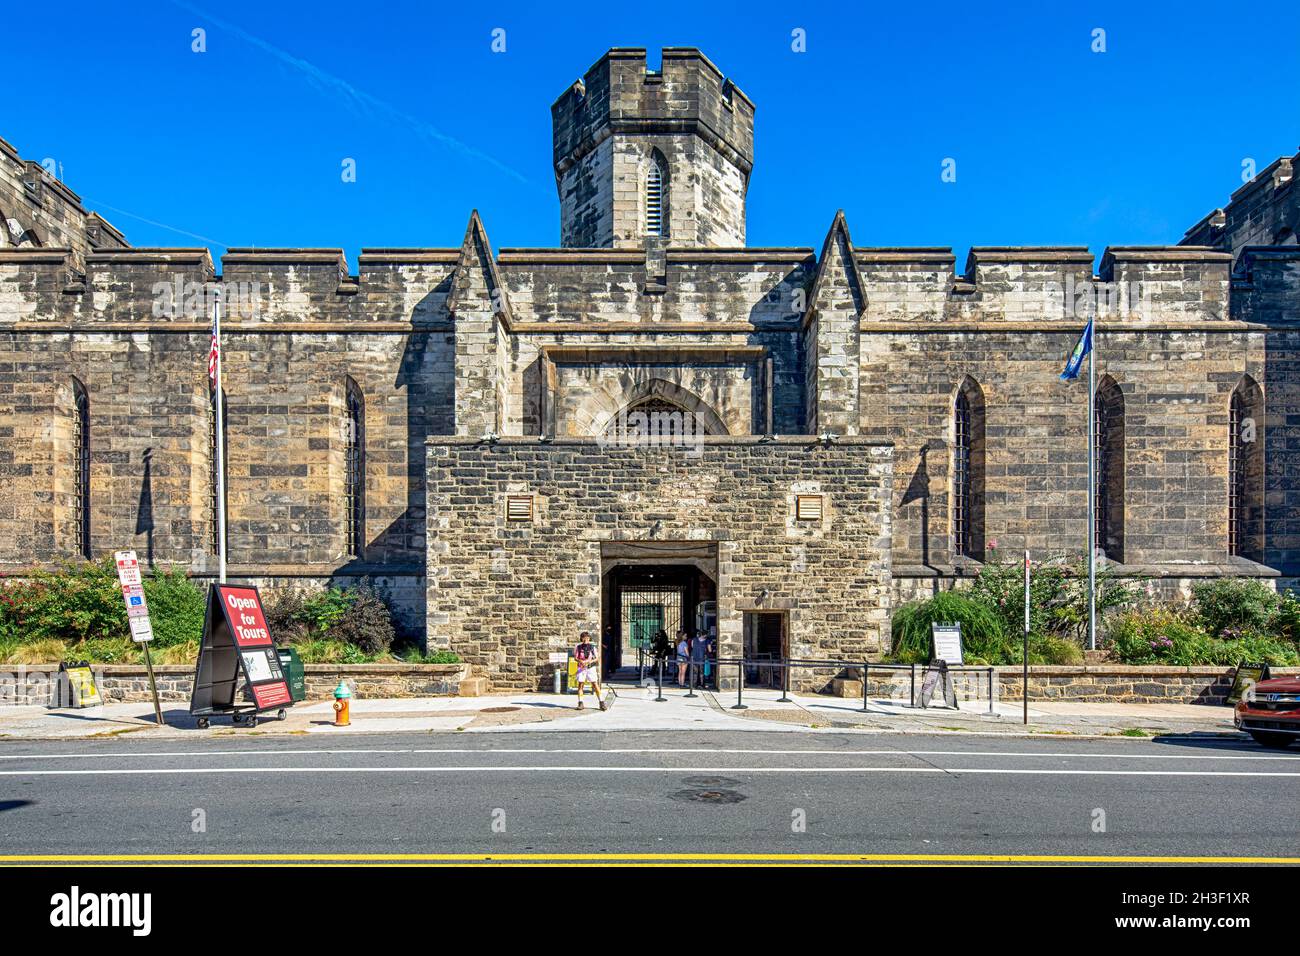 2027 Fairmount Avenue, Eastern State Penitentiary. Das Wahrzeichen von Philadelphia, das heute eine „erhaltene Ruine“ und ein Museum ist, galt einst als Mustergefängnis. Stockfoto